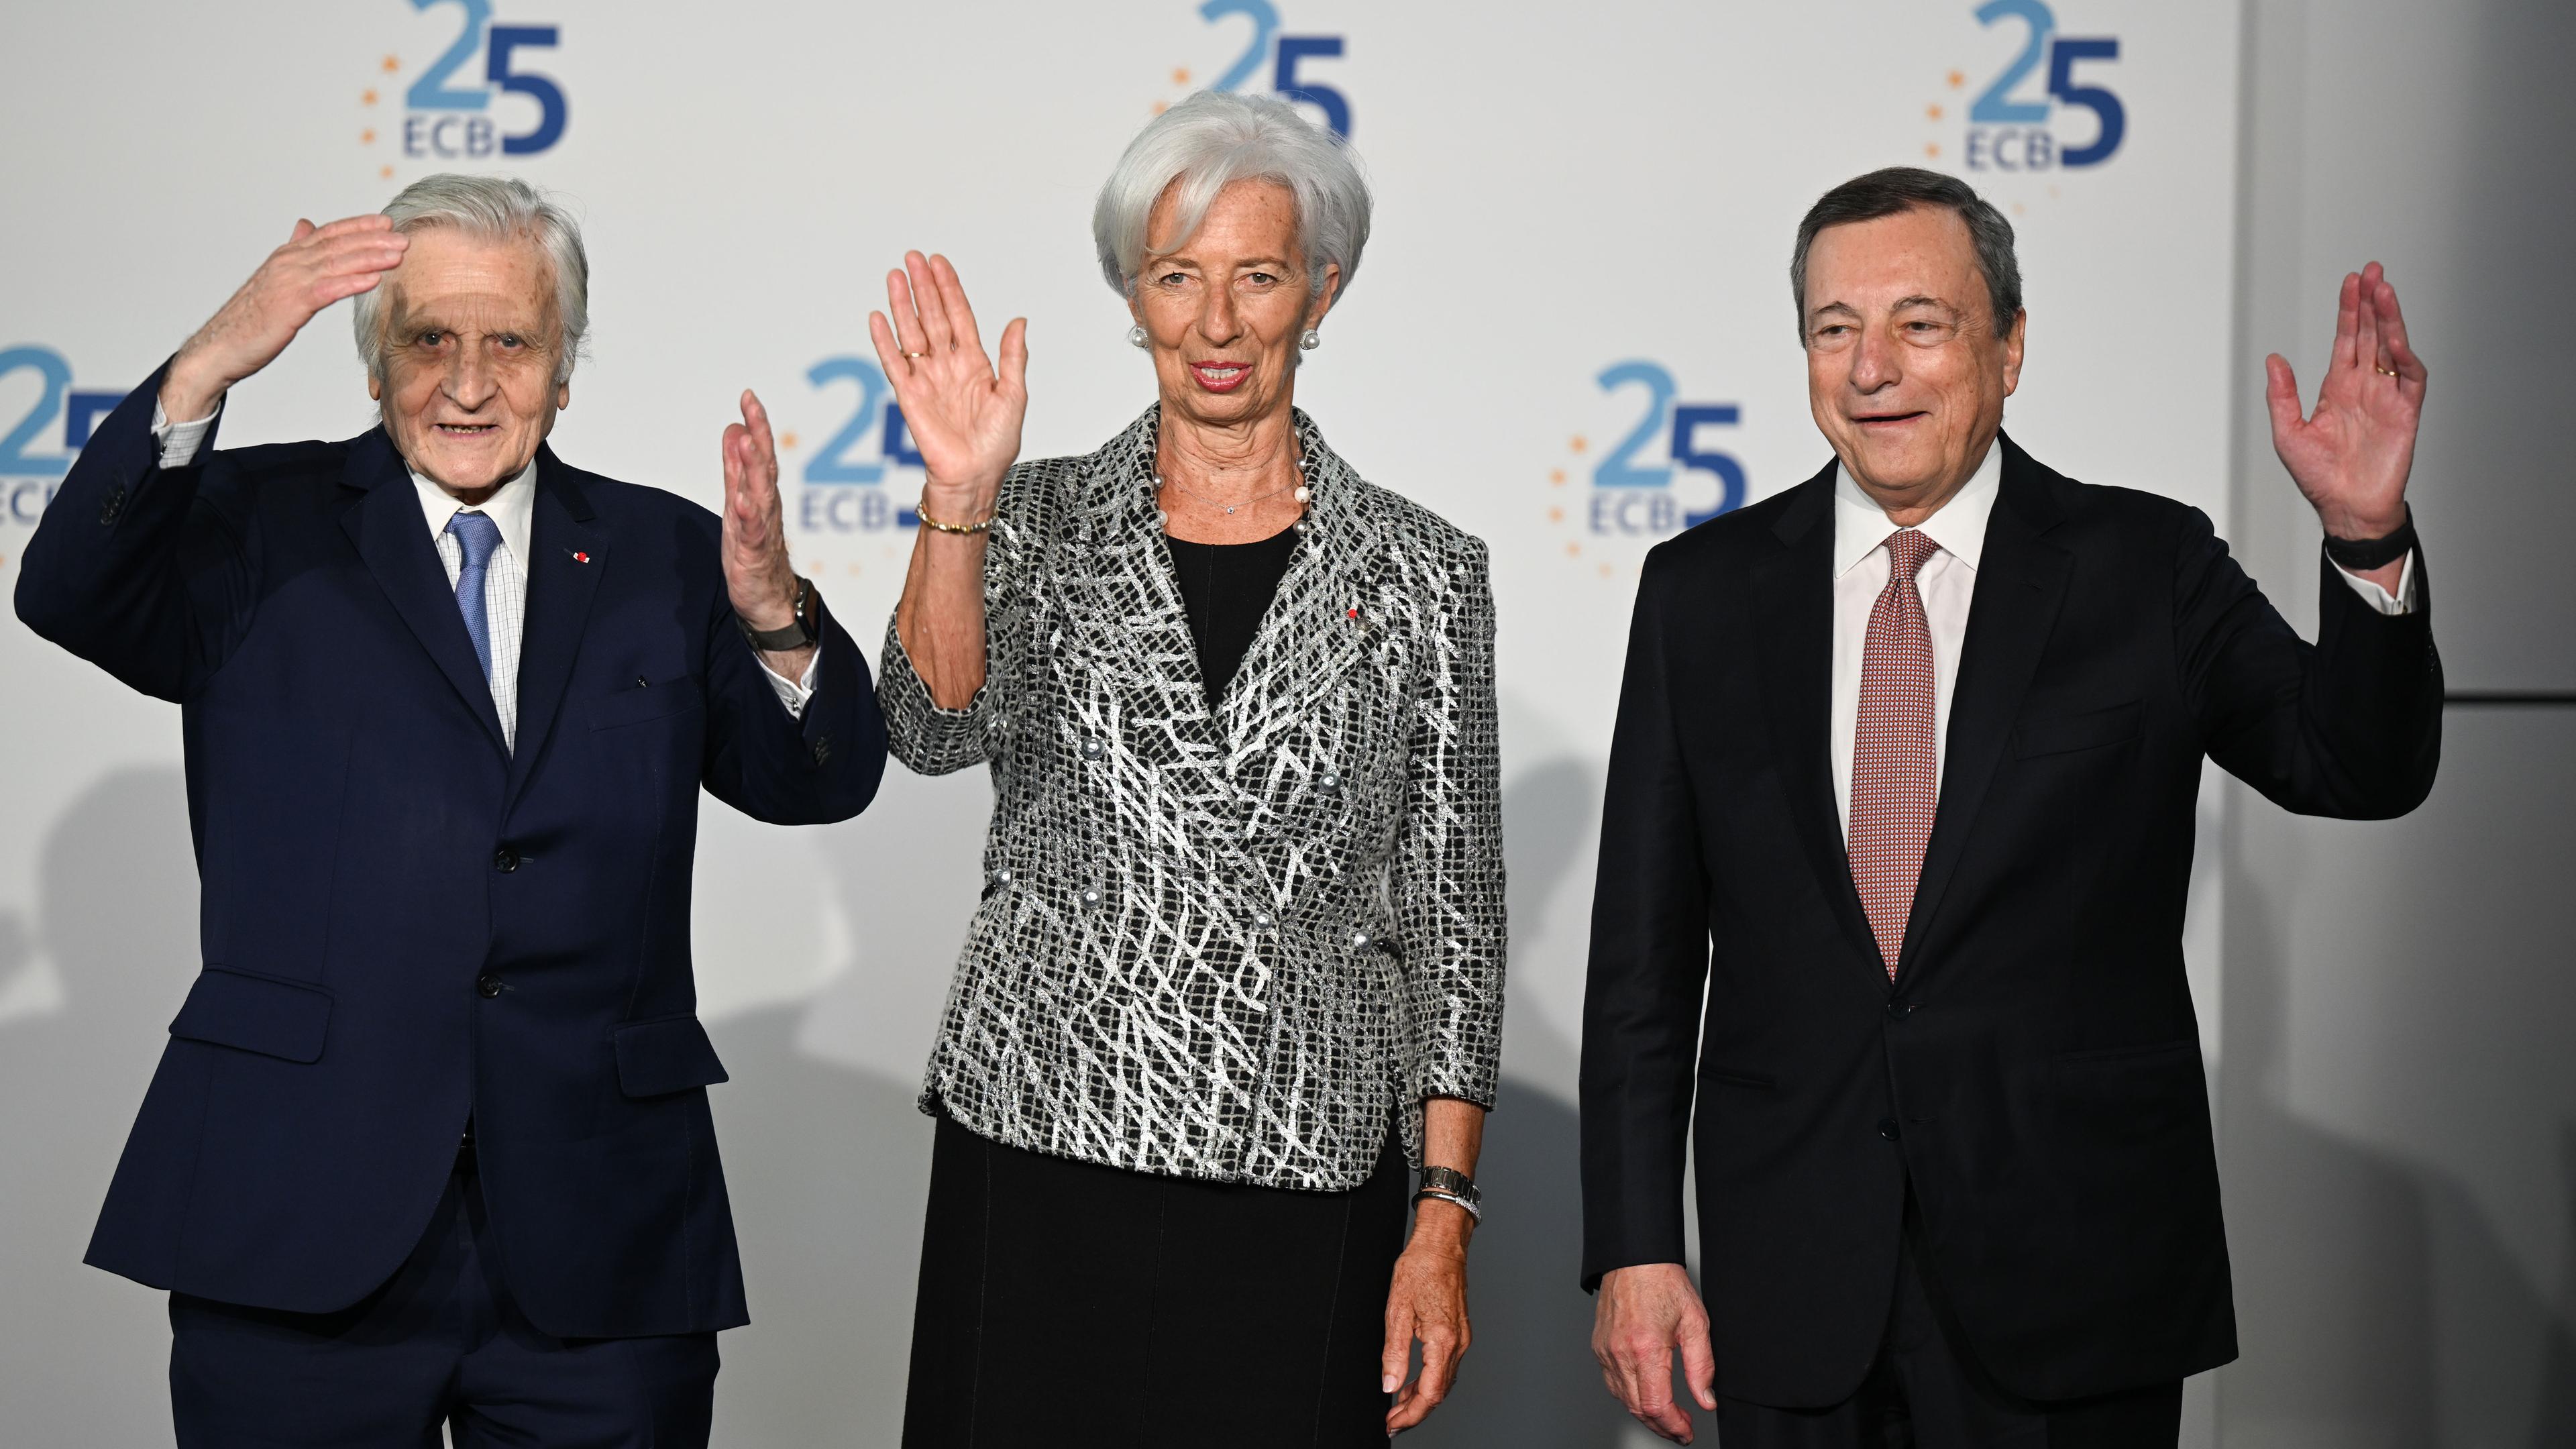 Die Präsidentin der Europäischen Zentralbank, Lagarde, mit den ehemaligen Präsidenten Draghi und Trichet